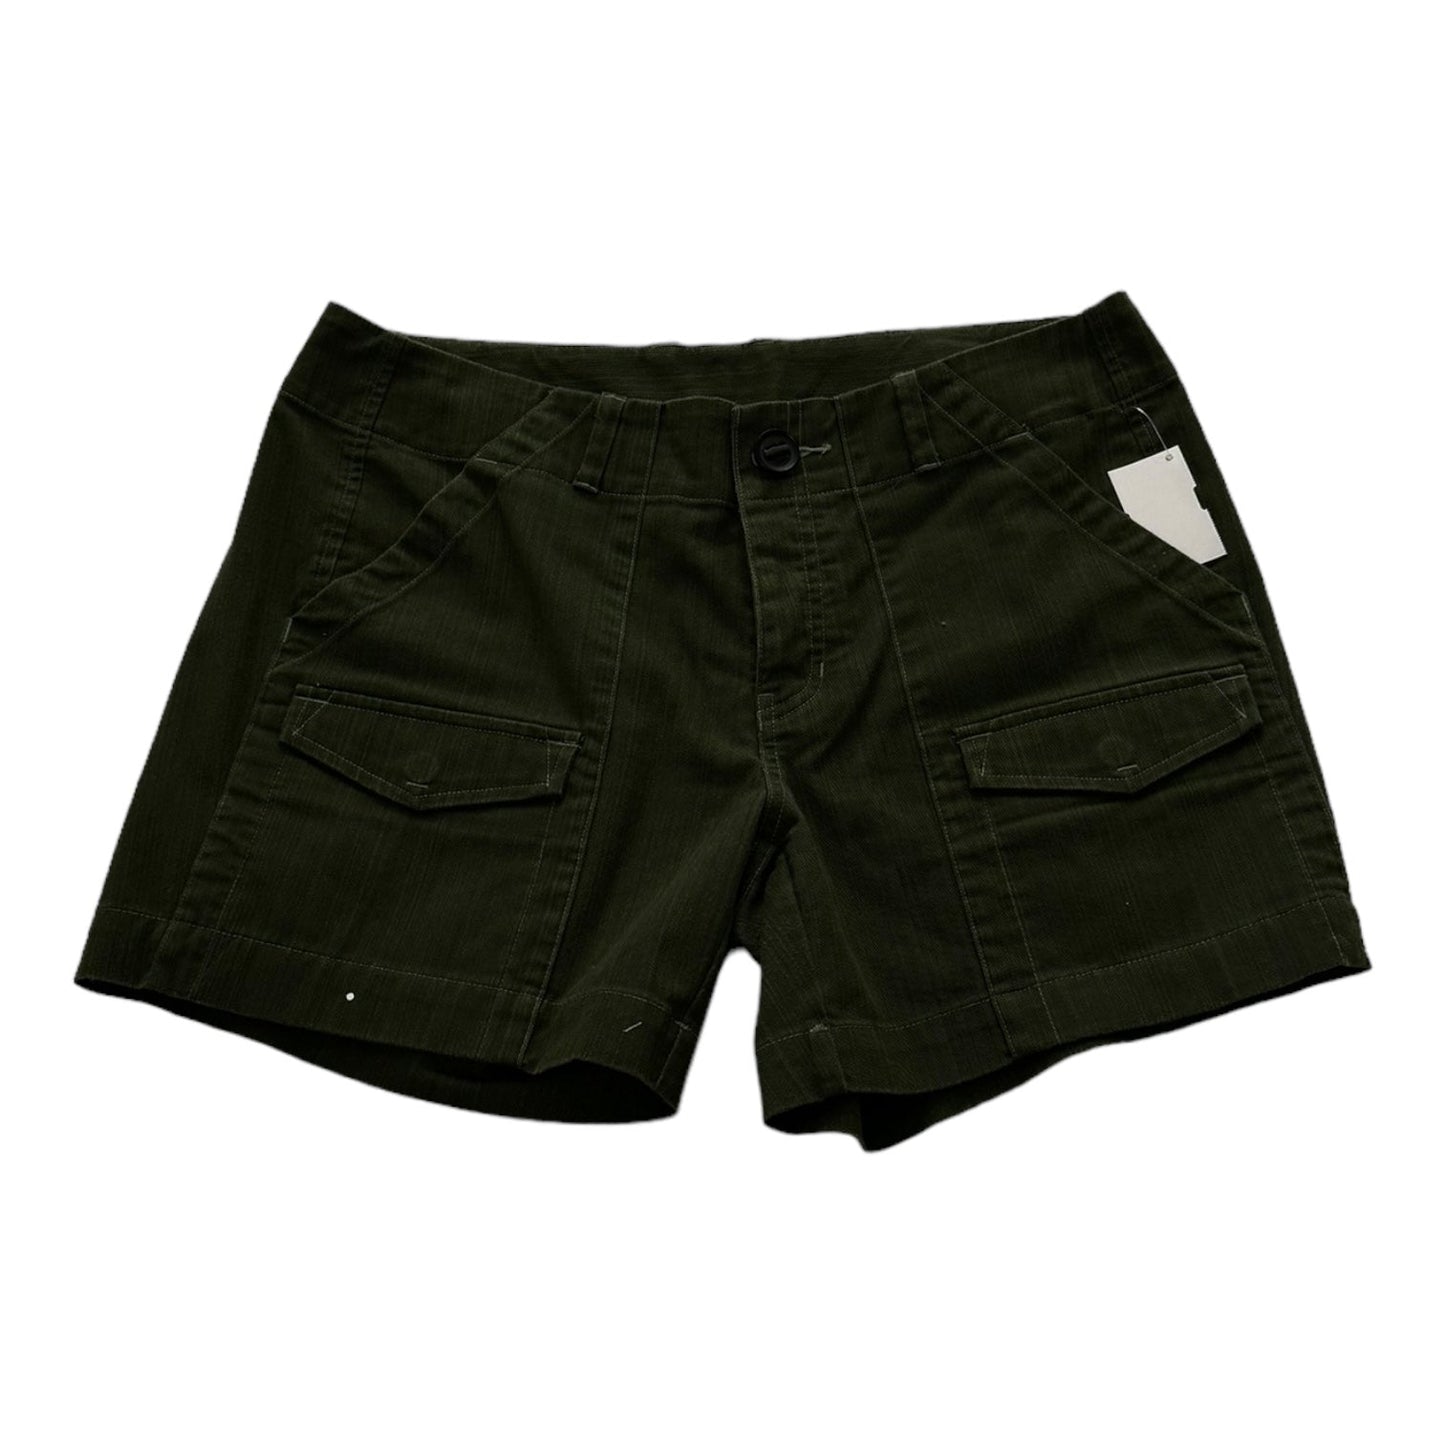 Green Shorts Mountain Hardwear, Size 6